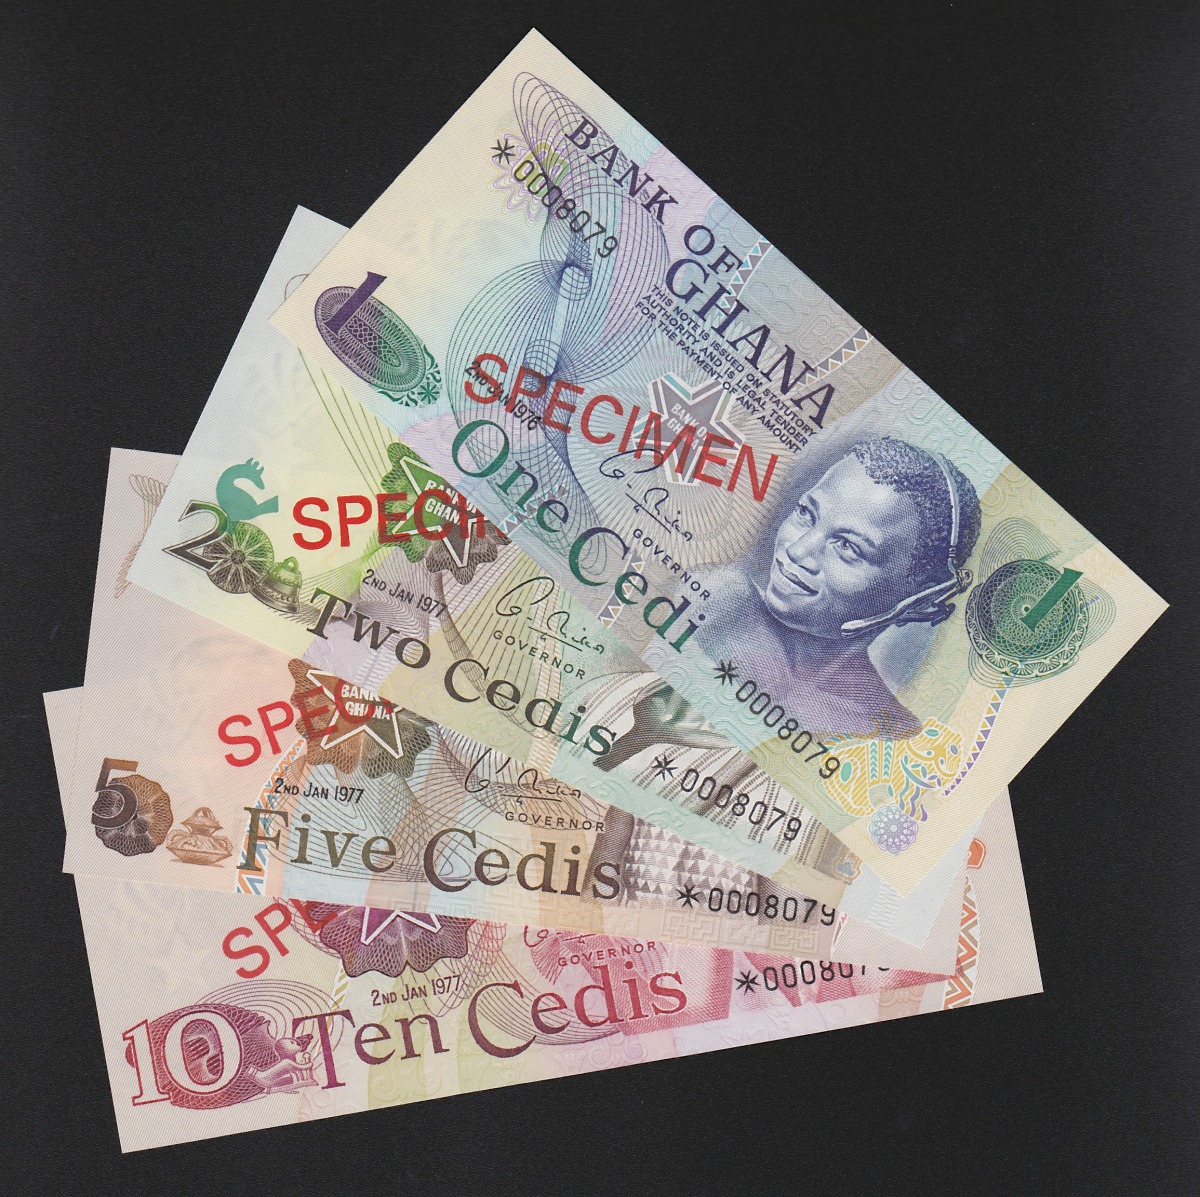 アフリカ紙幣 ガーナ 1,2,5,10Cedi 見本券 計4枚組